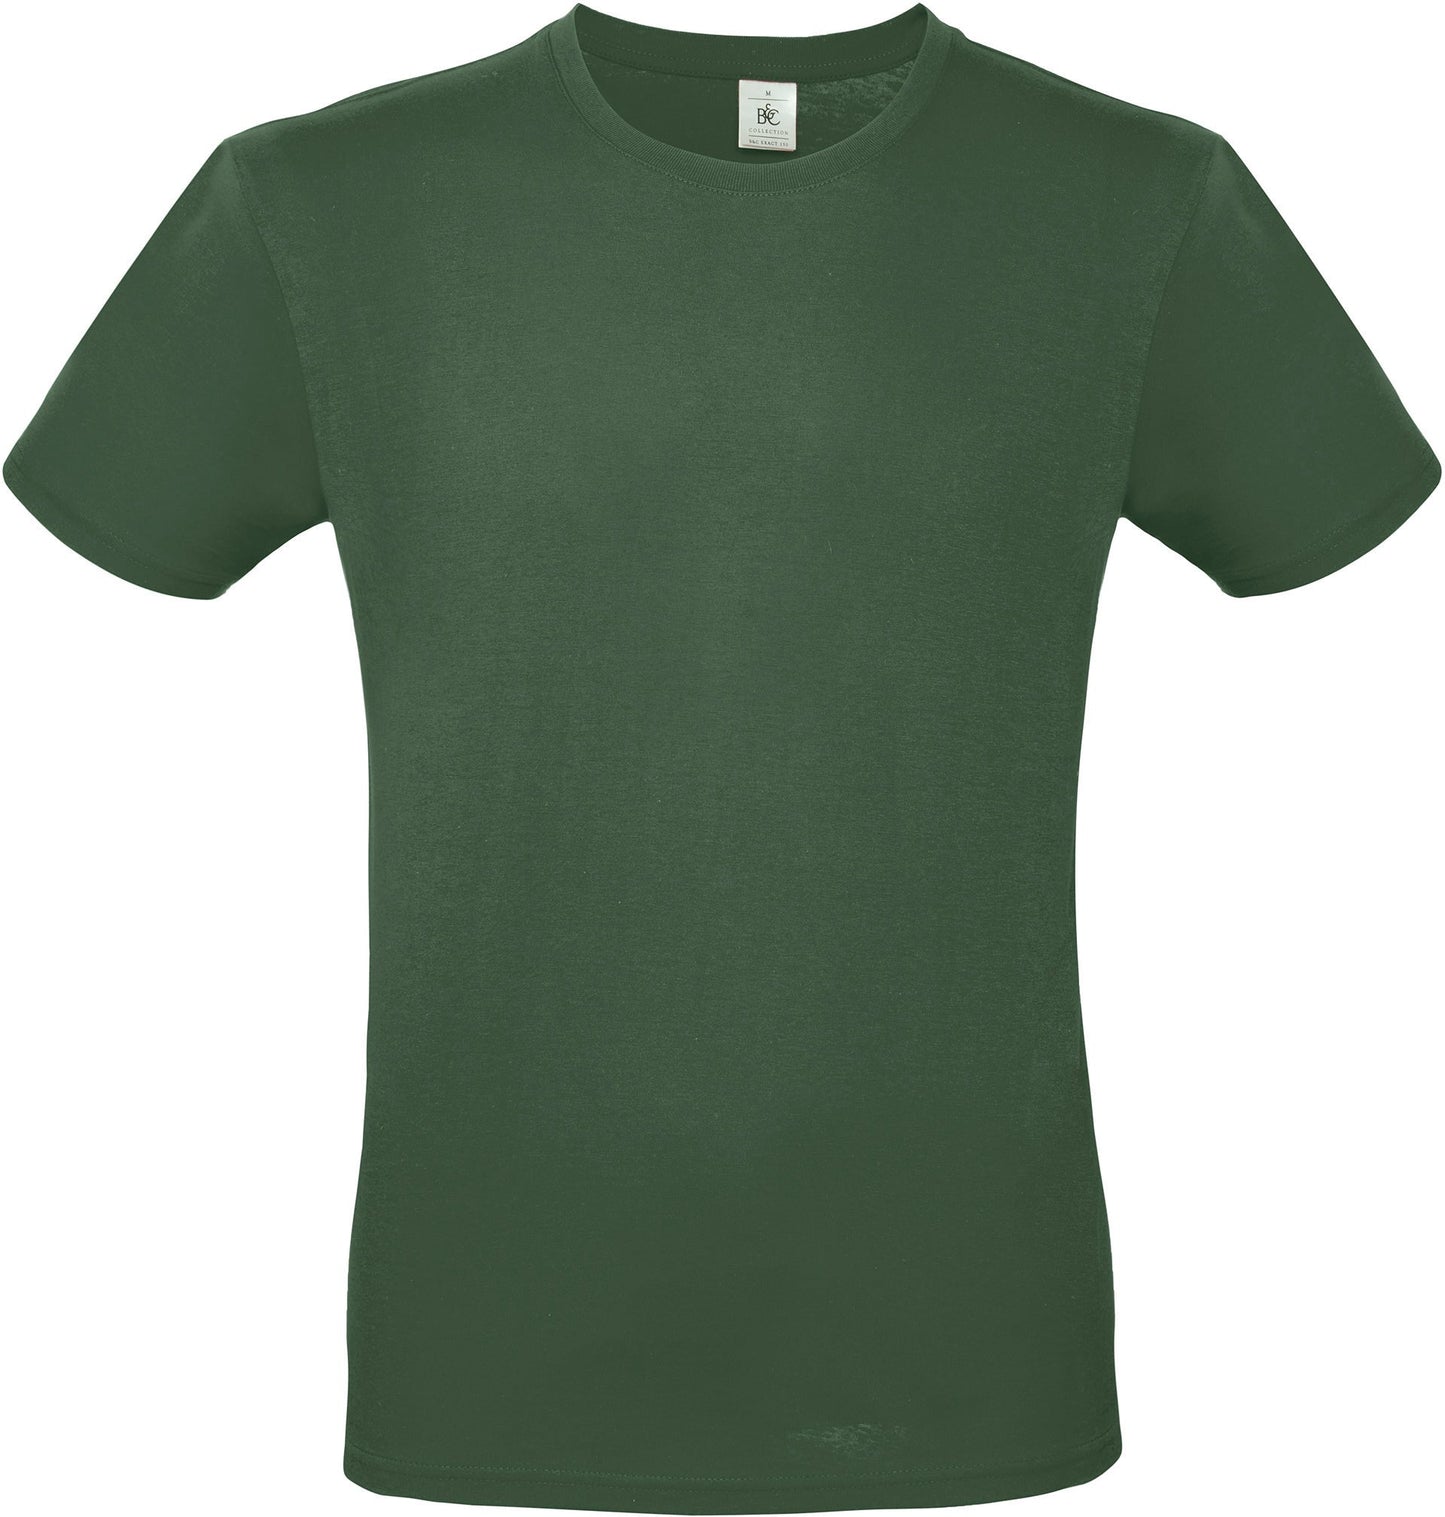 B&c - T-shirt - 7 coloris (Optionnel)